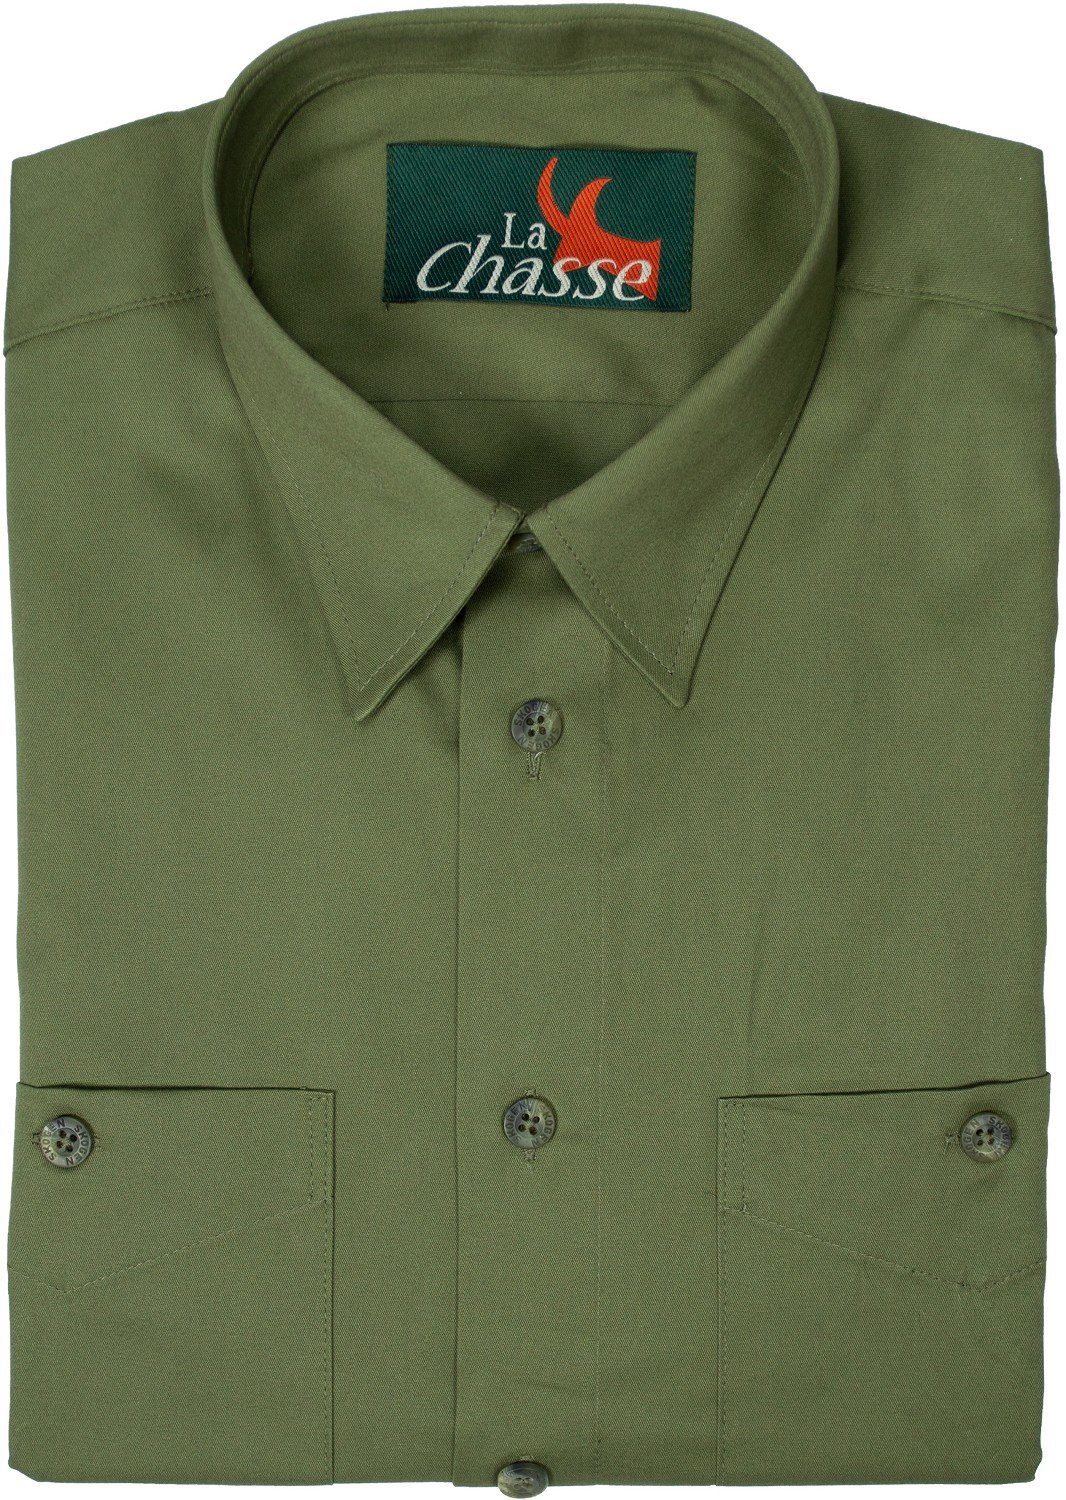 La Chasse® Outdoorhemd Herrenhemd mit extra Langen Ärmeln (69 cm)  einfarbiges, olivgrünes Jag